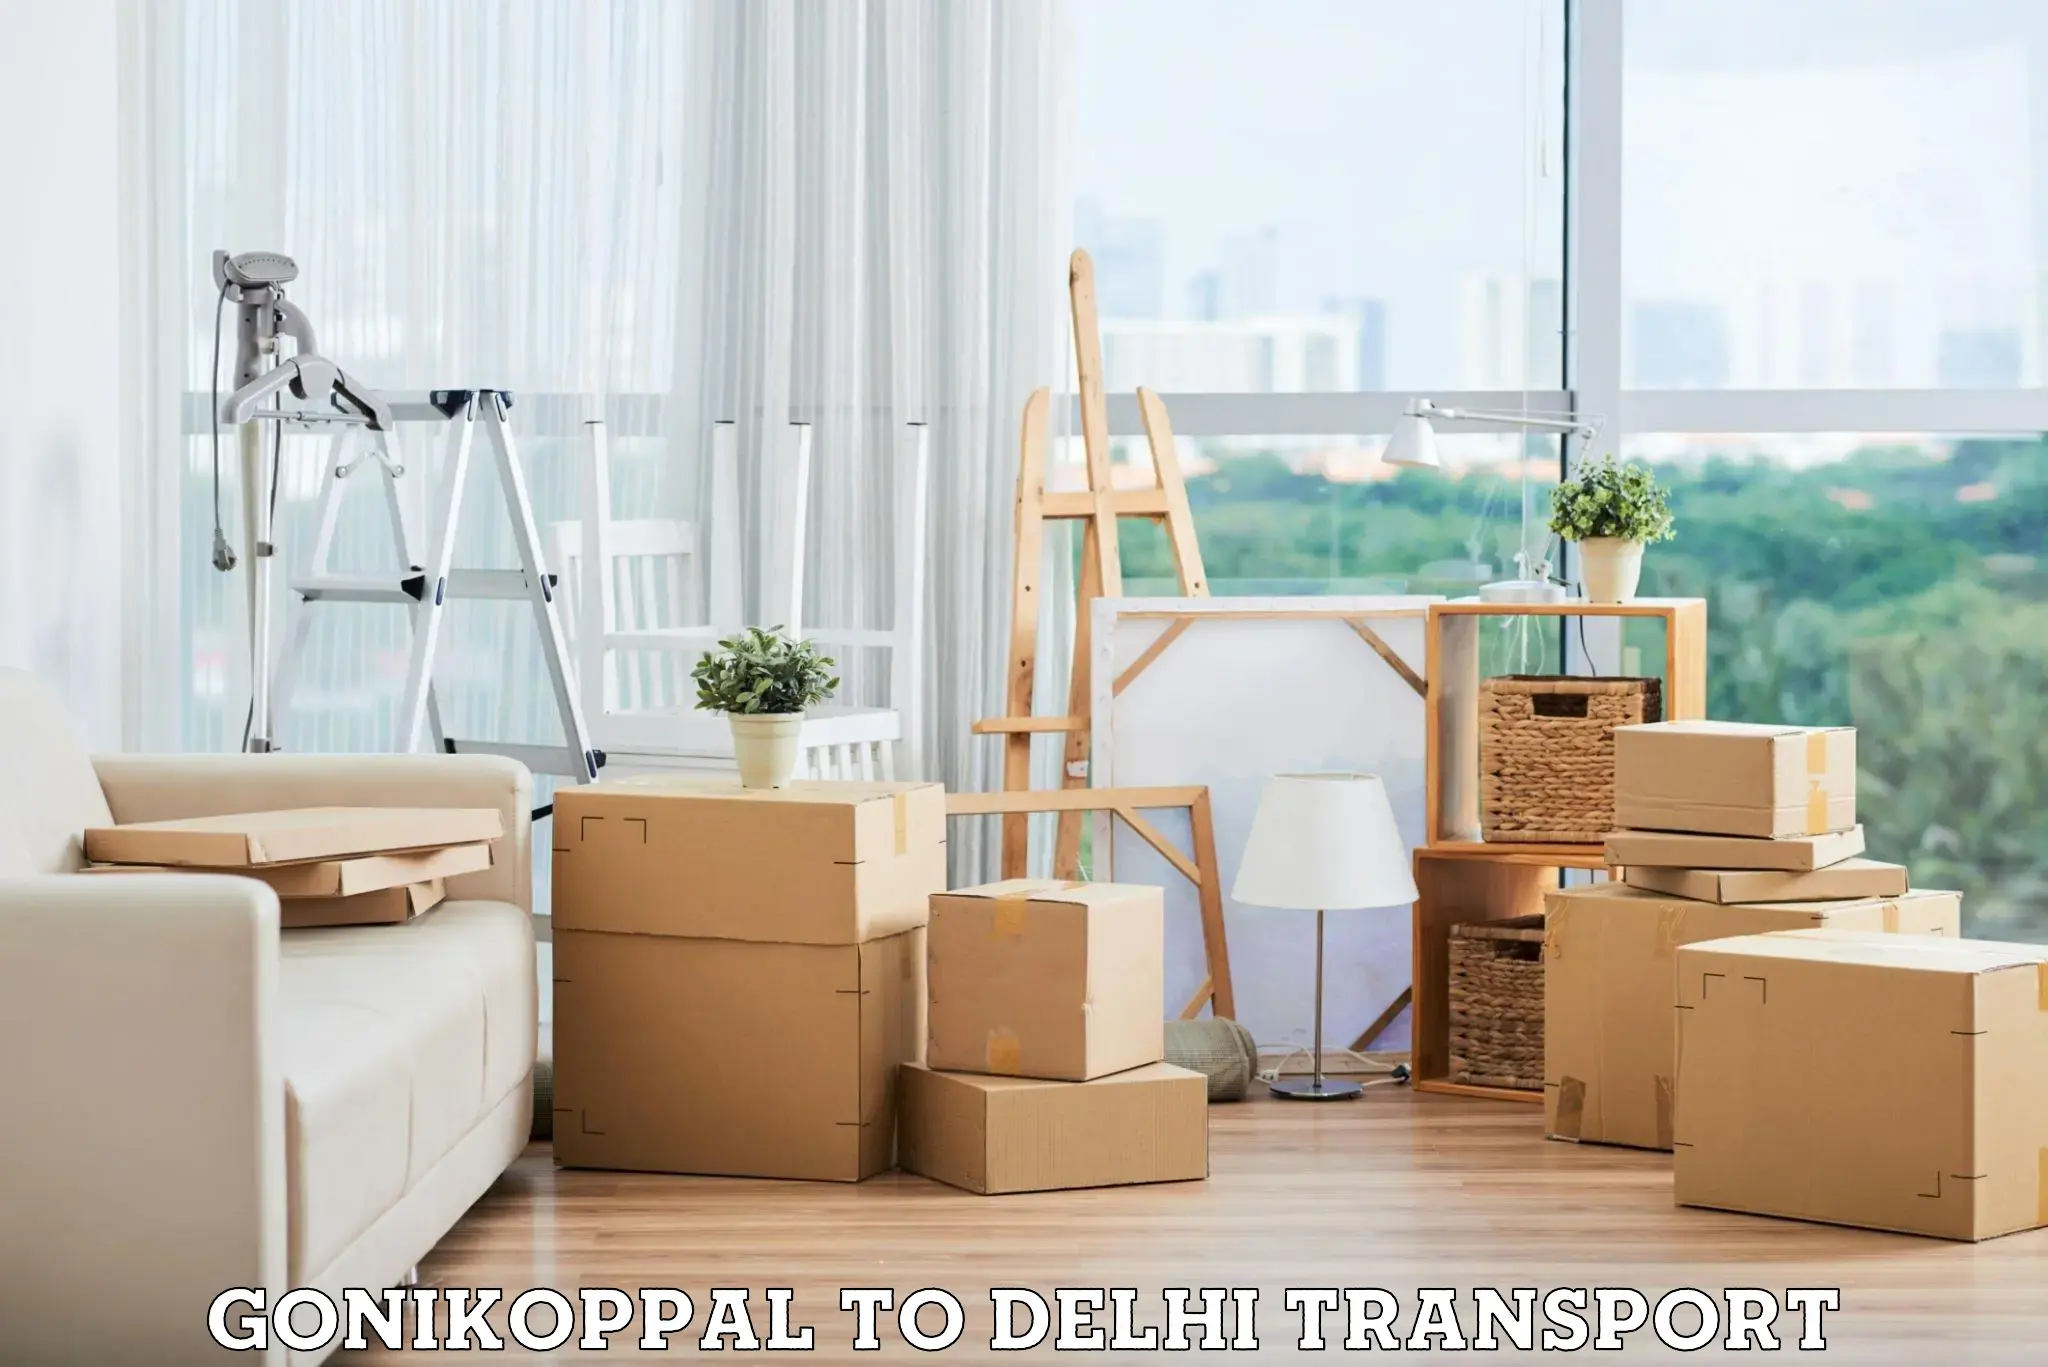 Intercity transport Gonikoppal to University of Delhi